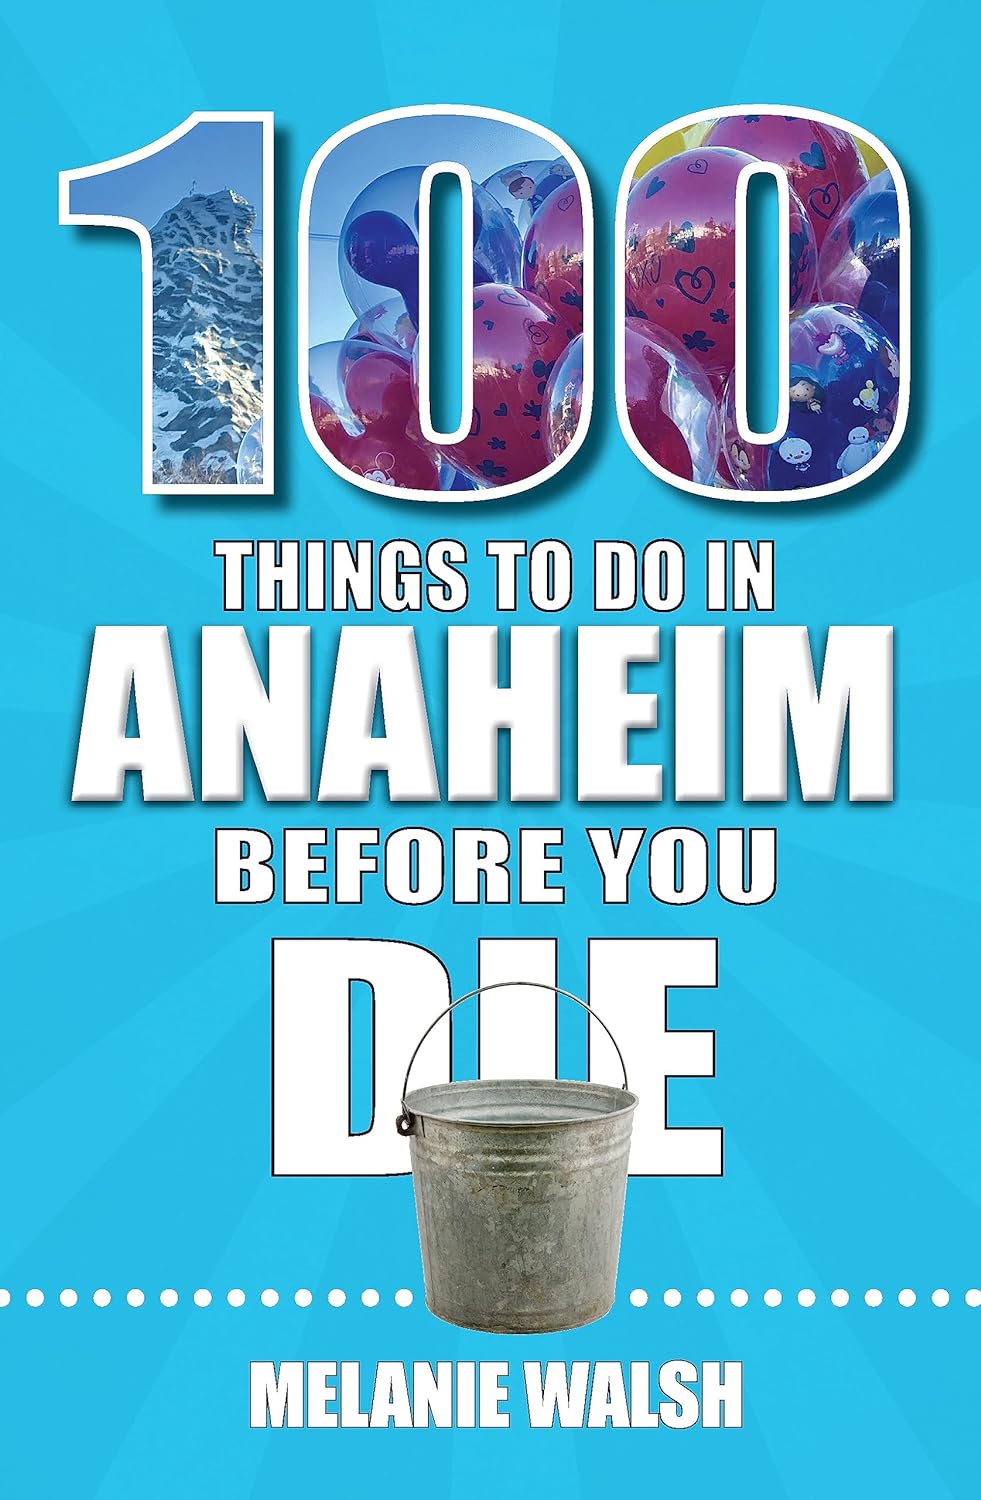 100-anaheim-to-do